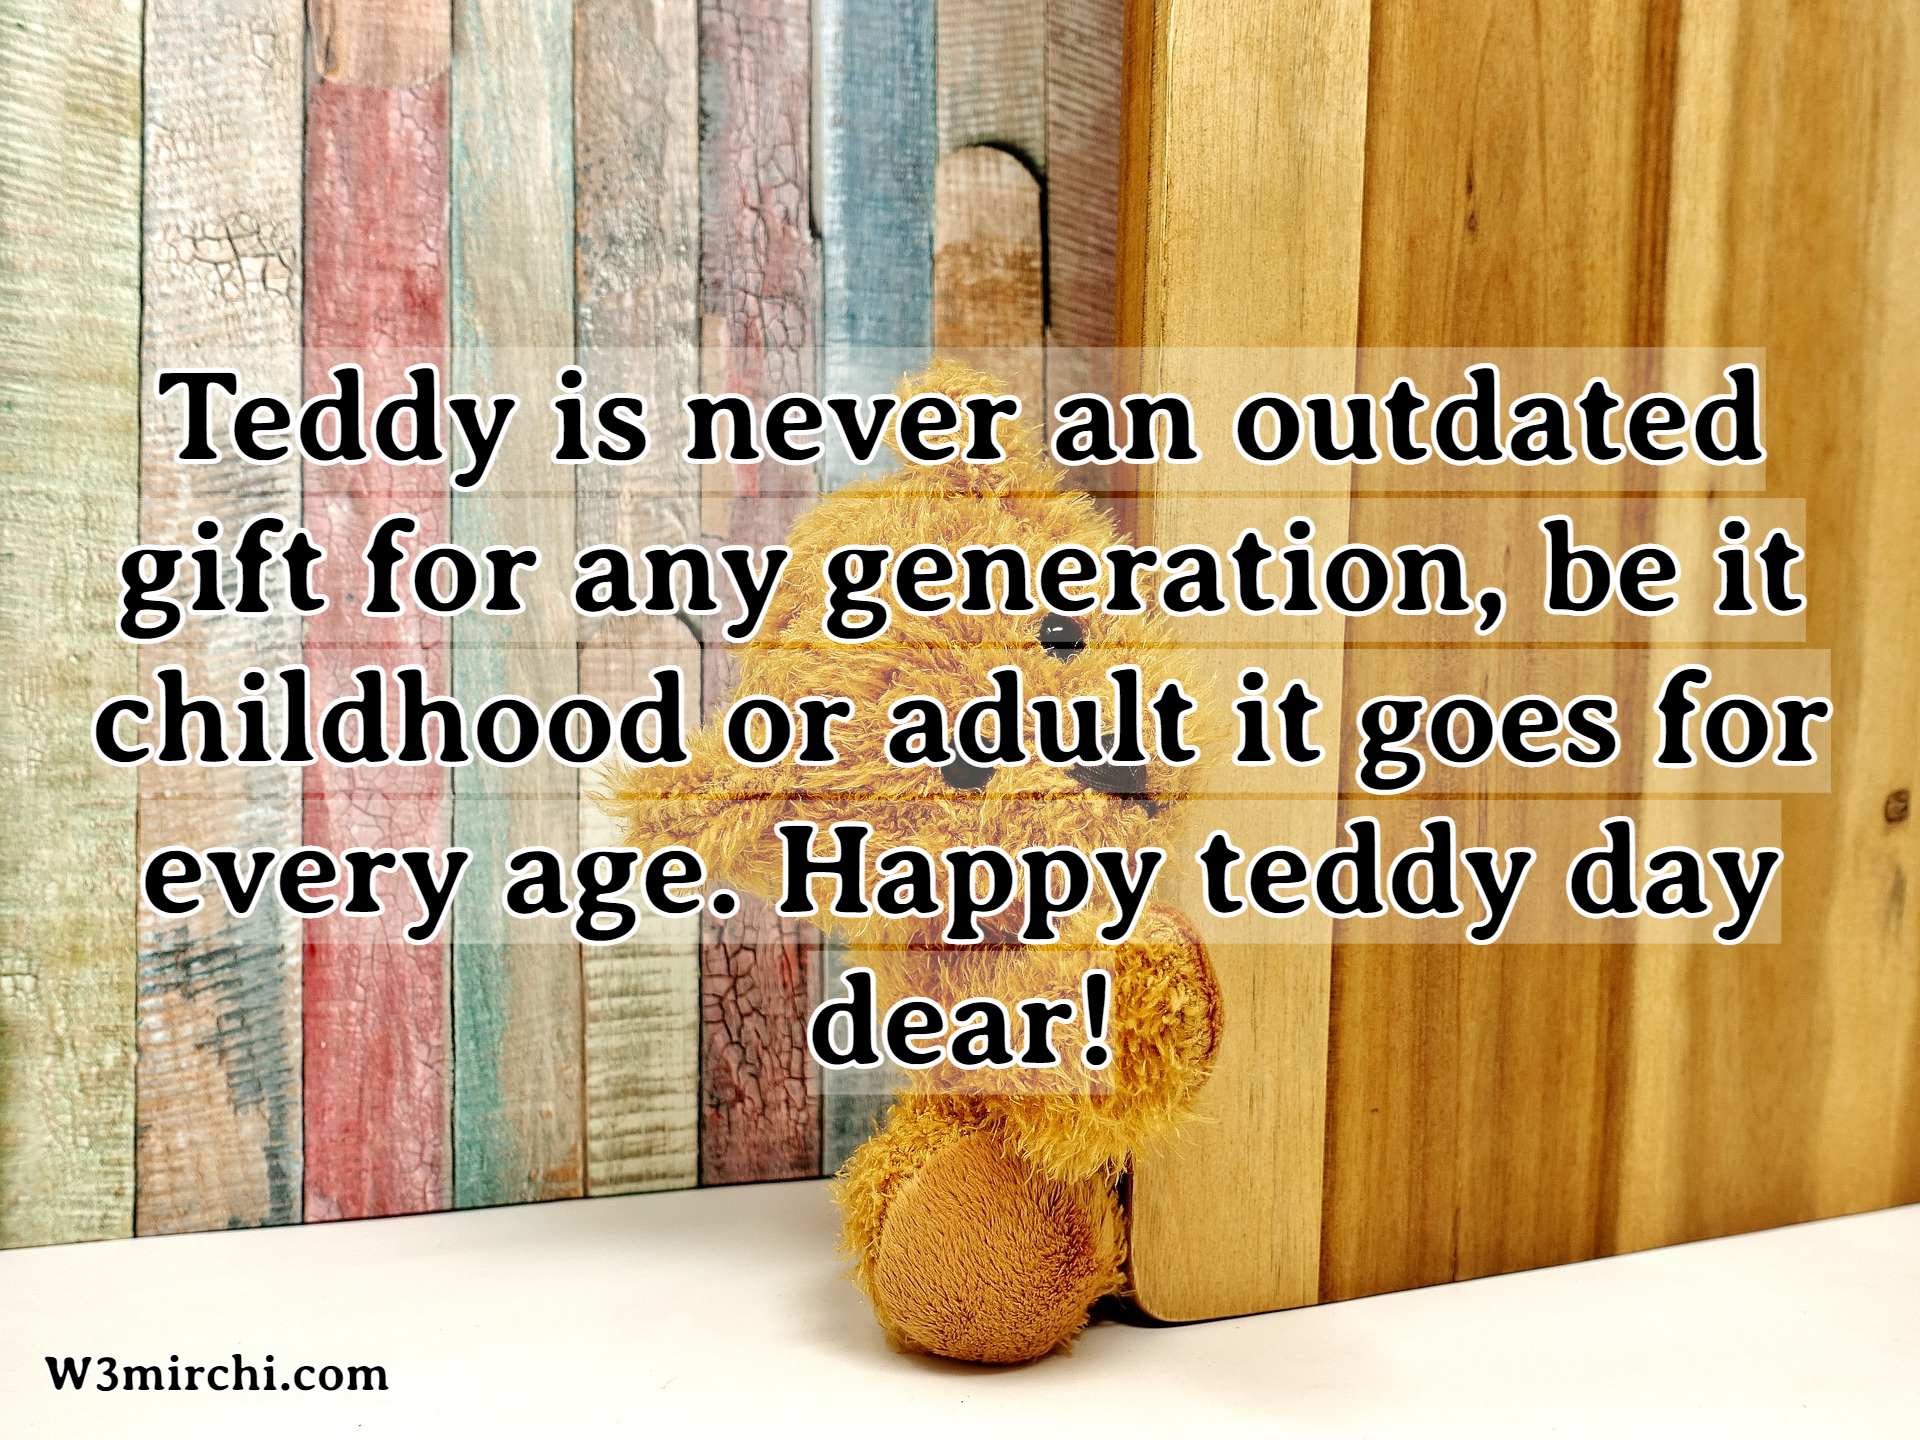 Happy teddy day dear!